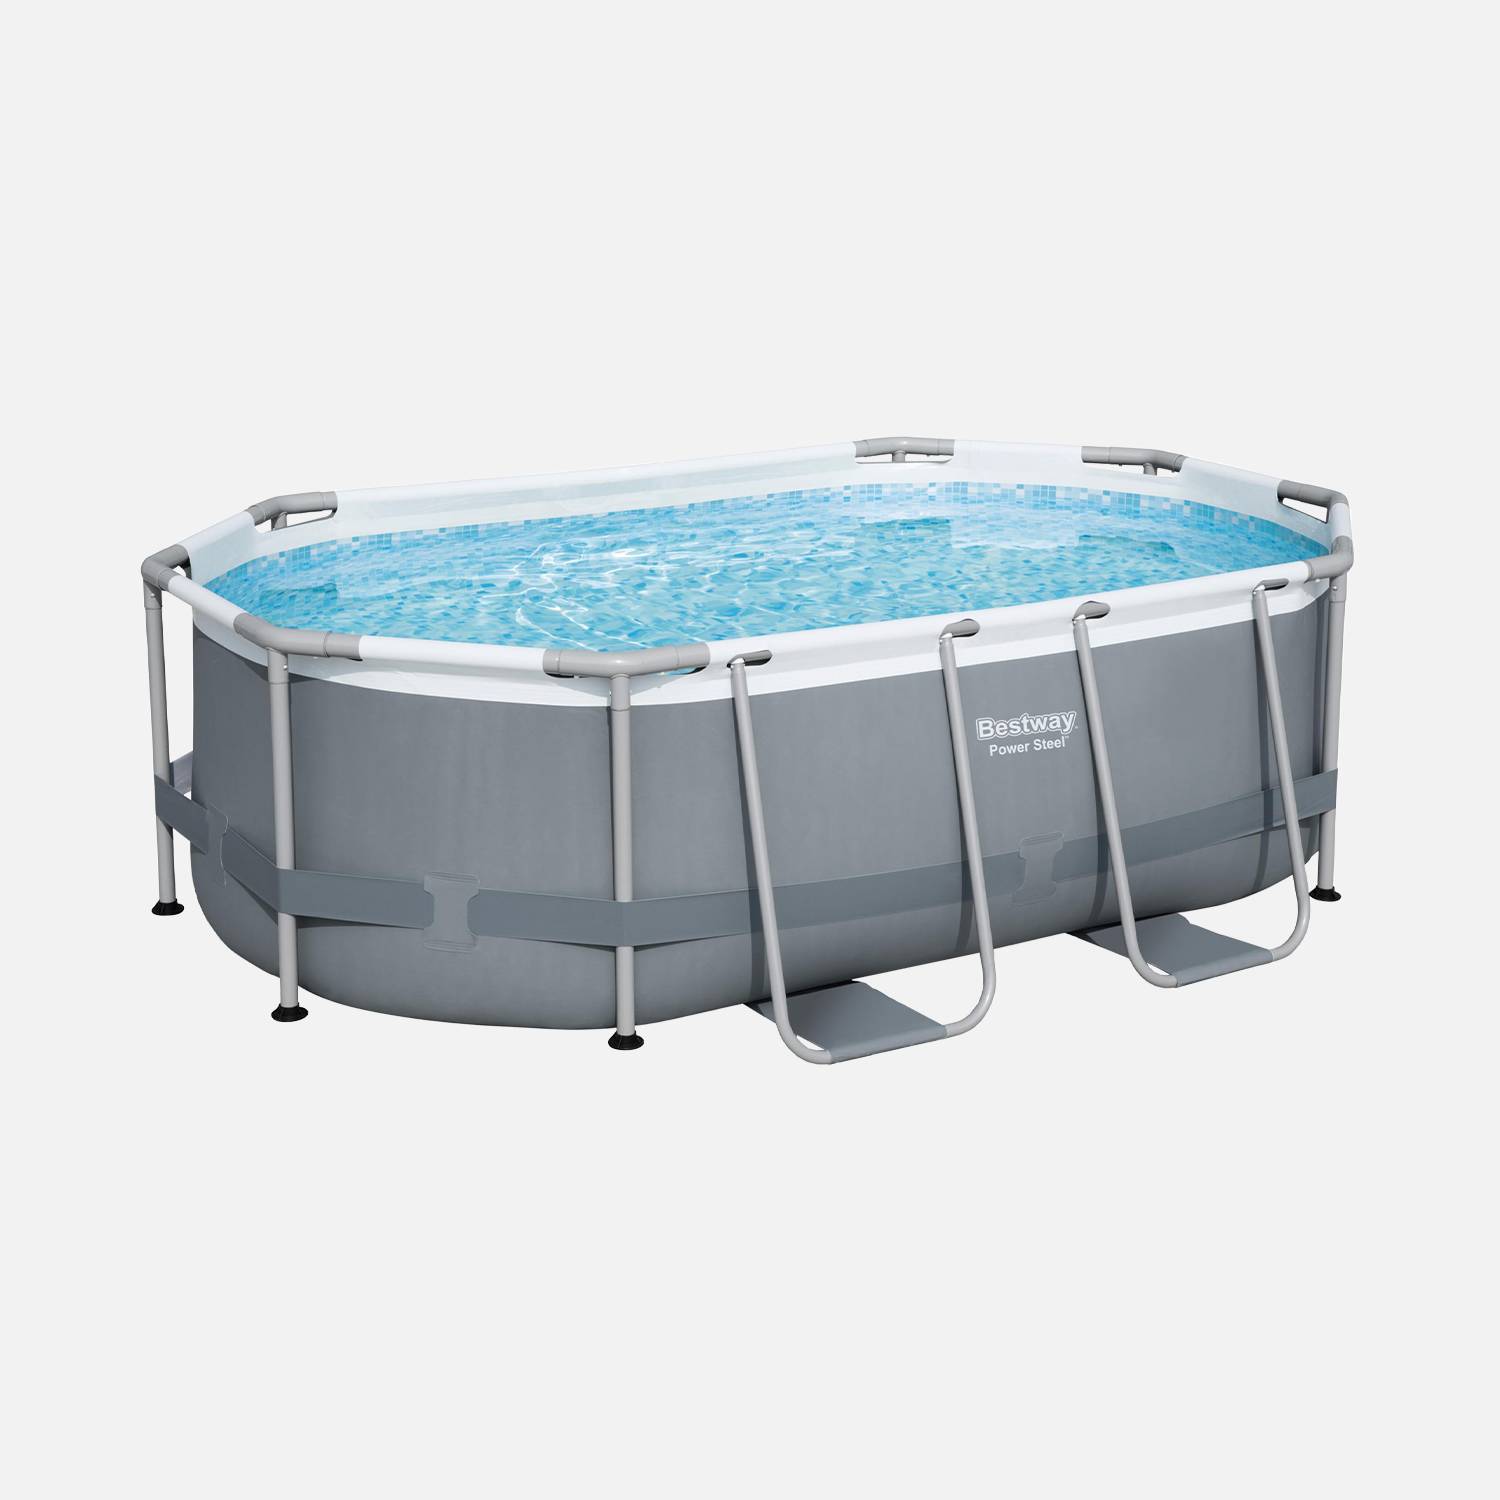 Kit piscine complet BESTWAY – Spinelle grise – piscine ovale tubulaire 3x2 m avec bâche de protection noire, pompe de filtration et kit de réparation inclus  Photo2